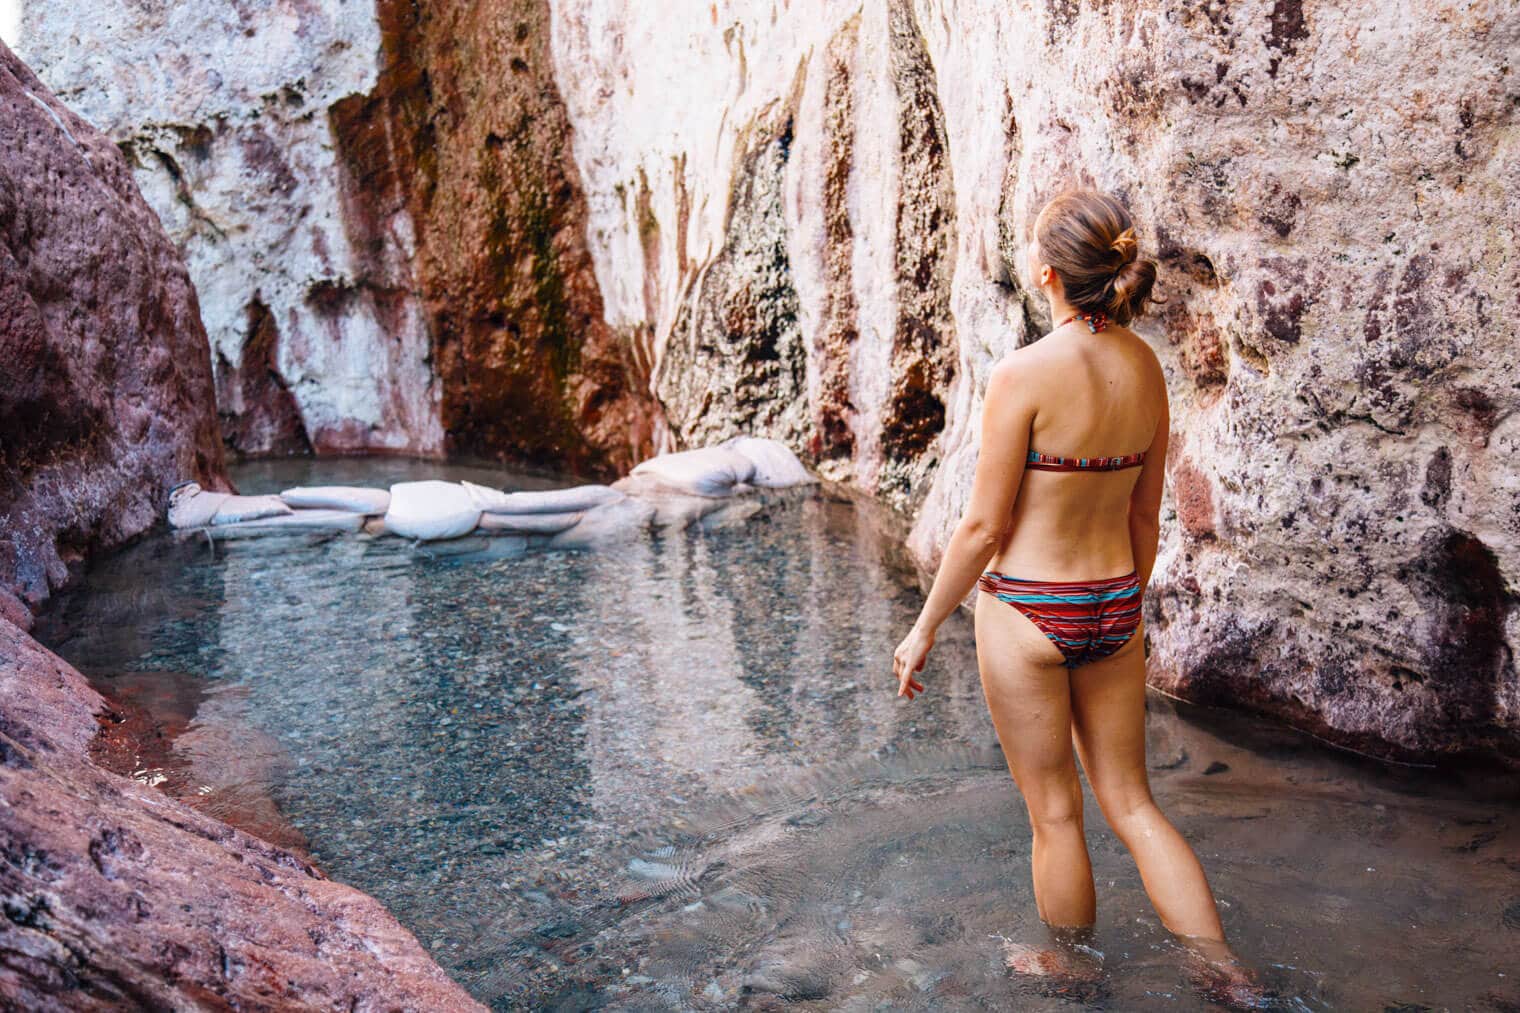 Megan standing in Arizona Hot Springs